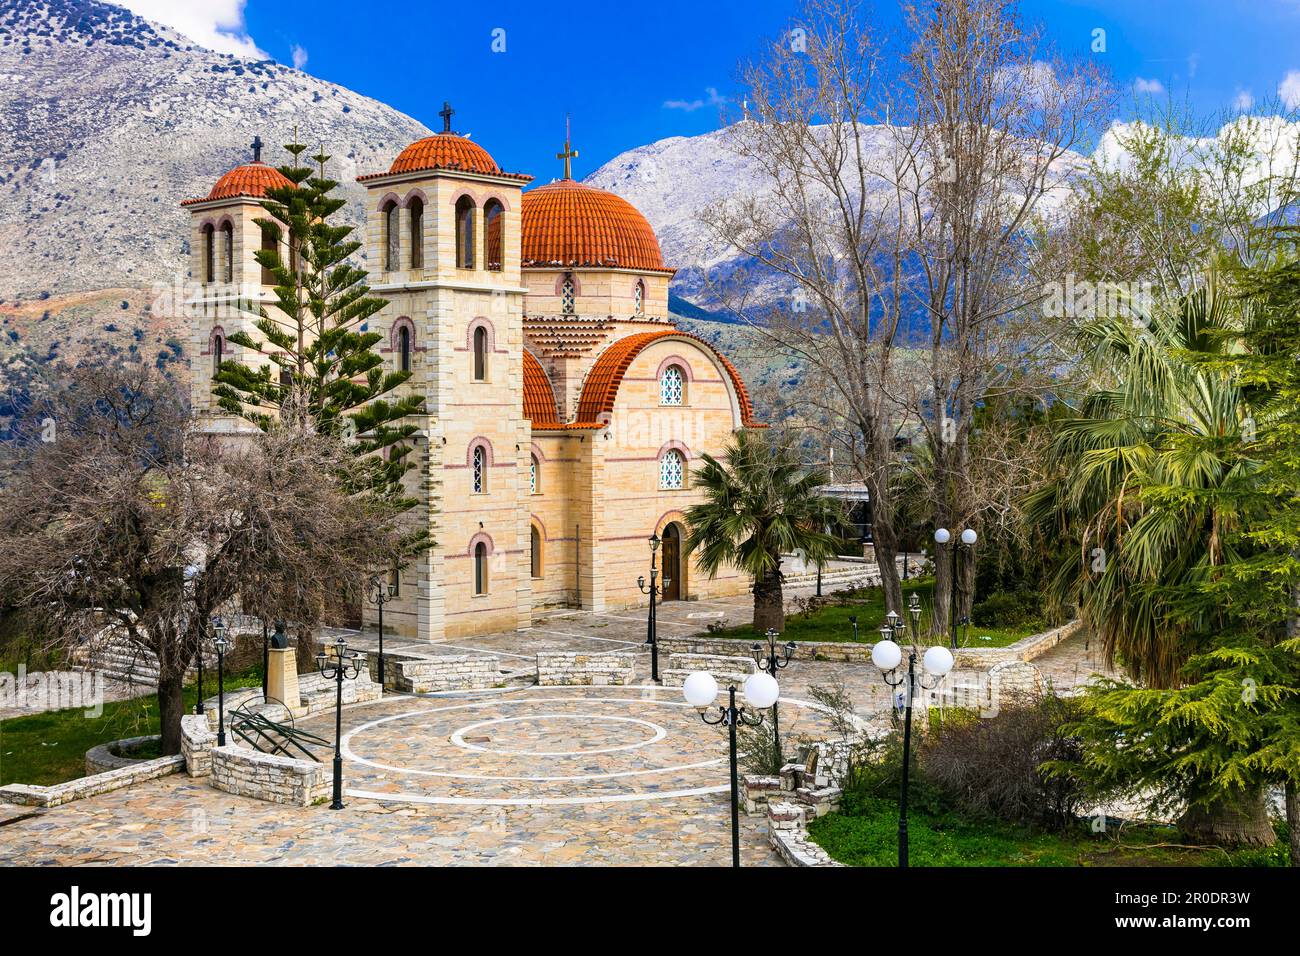 Chiese tradizionali greche ortodosse. Isola di Creta, Grecia Foto Stock